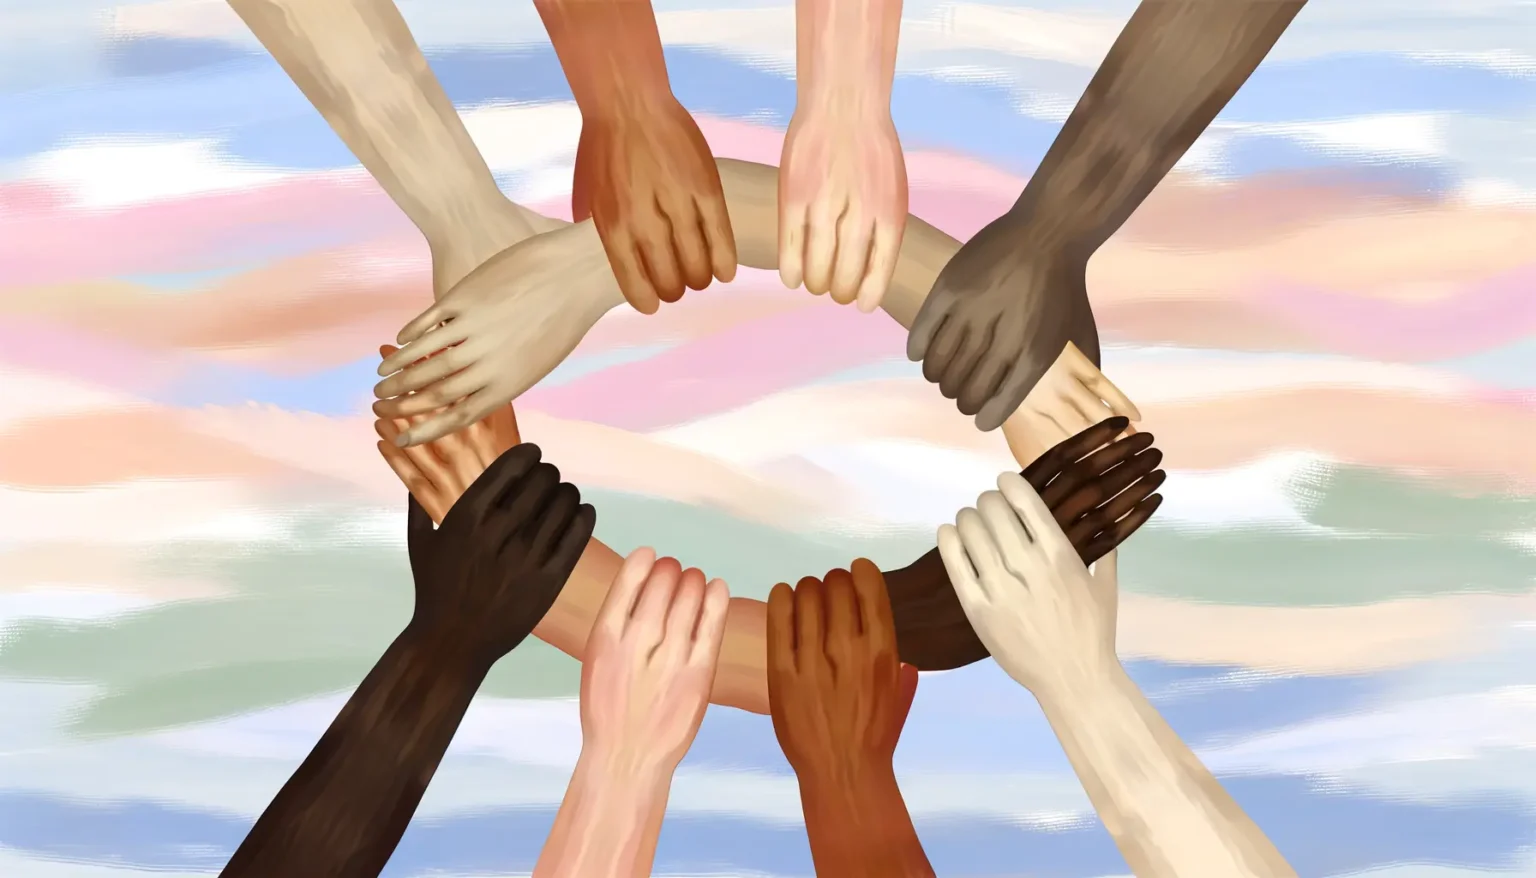 Eine digitale Illustration von acht Händen unterschiedlicher Hautfarben, die in einem Kreis einander ergreifen und eine Einheit symbolisieren, vor einem Hintergrund, der pastellfarbene Streifen in Blau-, Rosa- und Beigetönen zeigt, die einen gemalten Himmel imitieren.